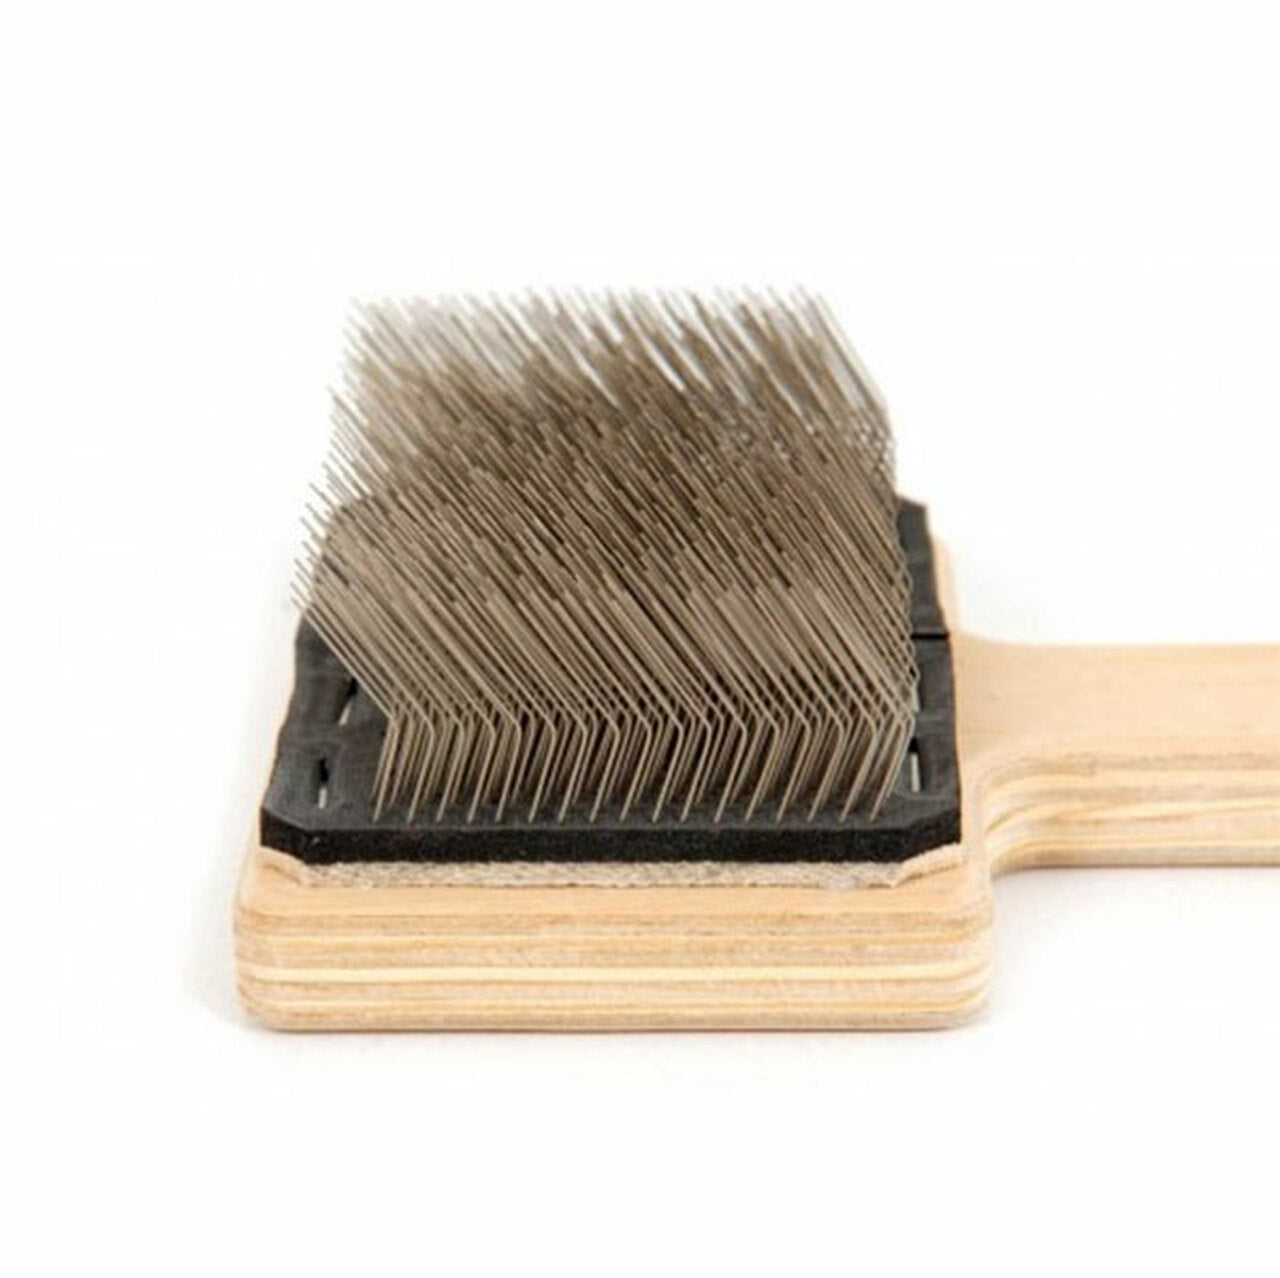 File Cleaner Brush